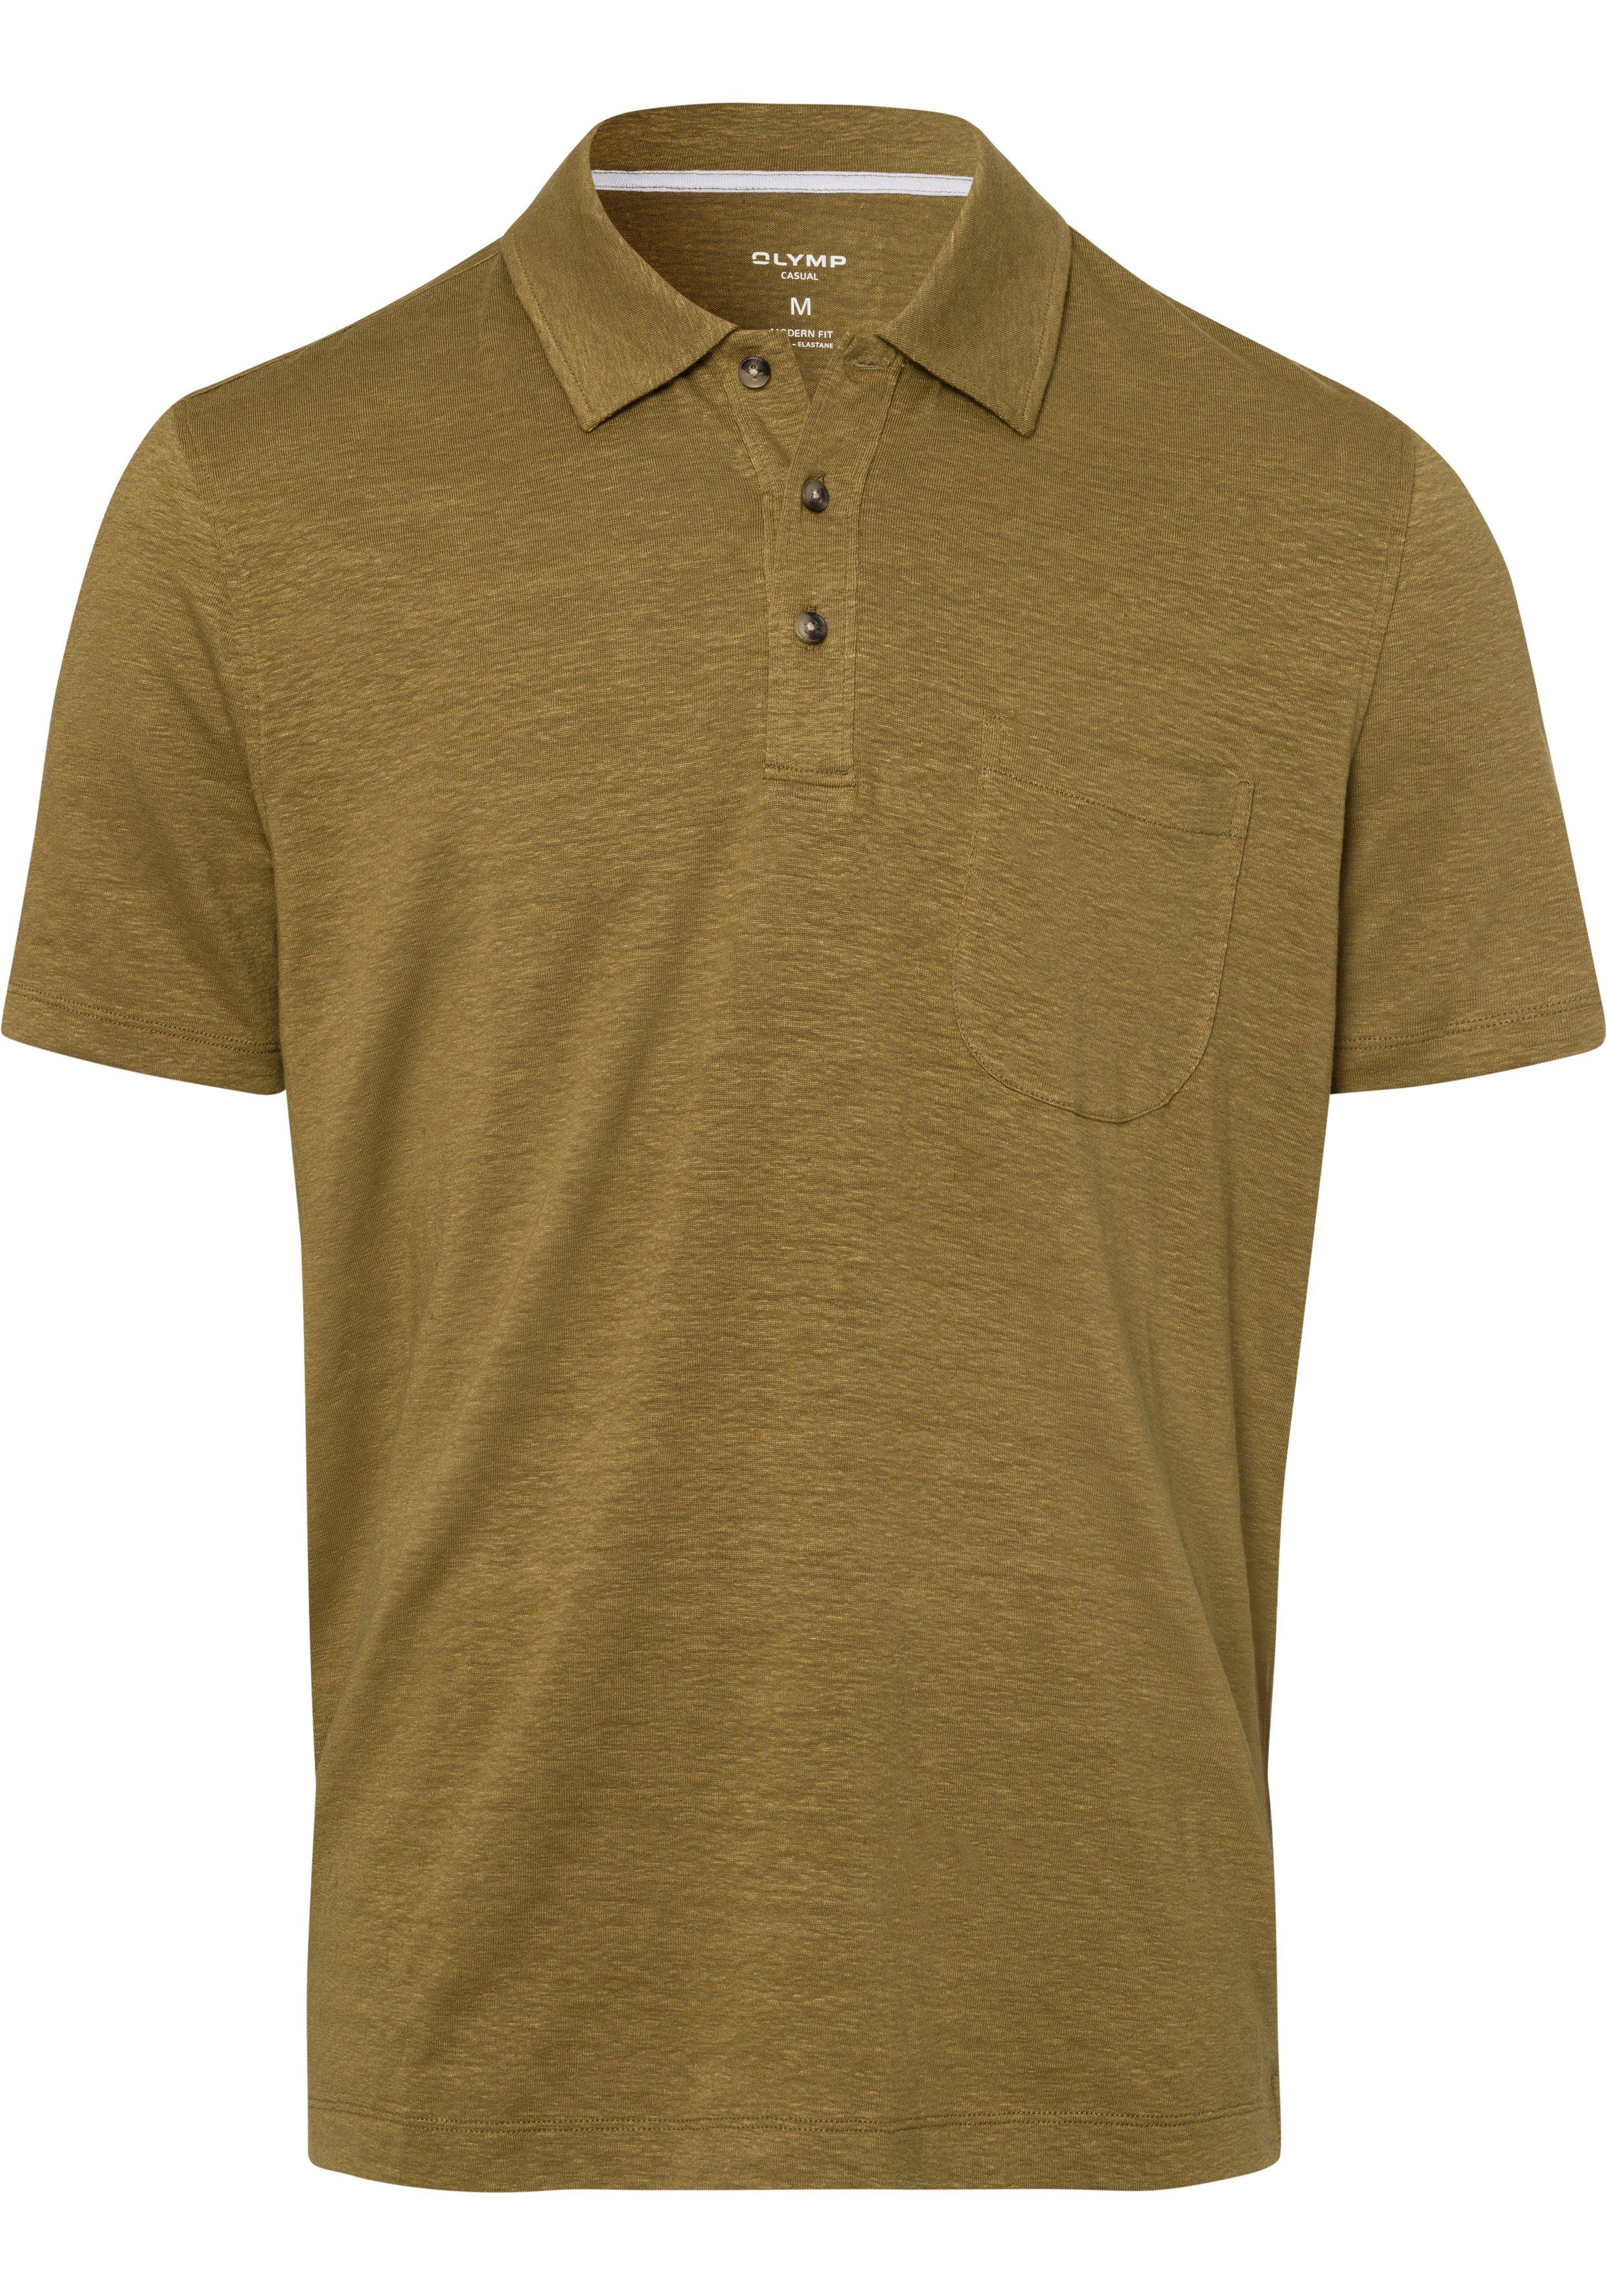 Hemden-Look Leinen Poloshirt sommerlicher nougat Casual-Optik im in OLYMP mit